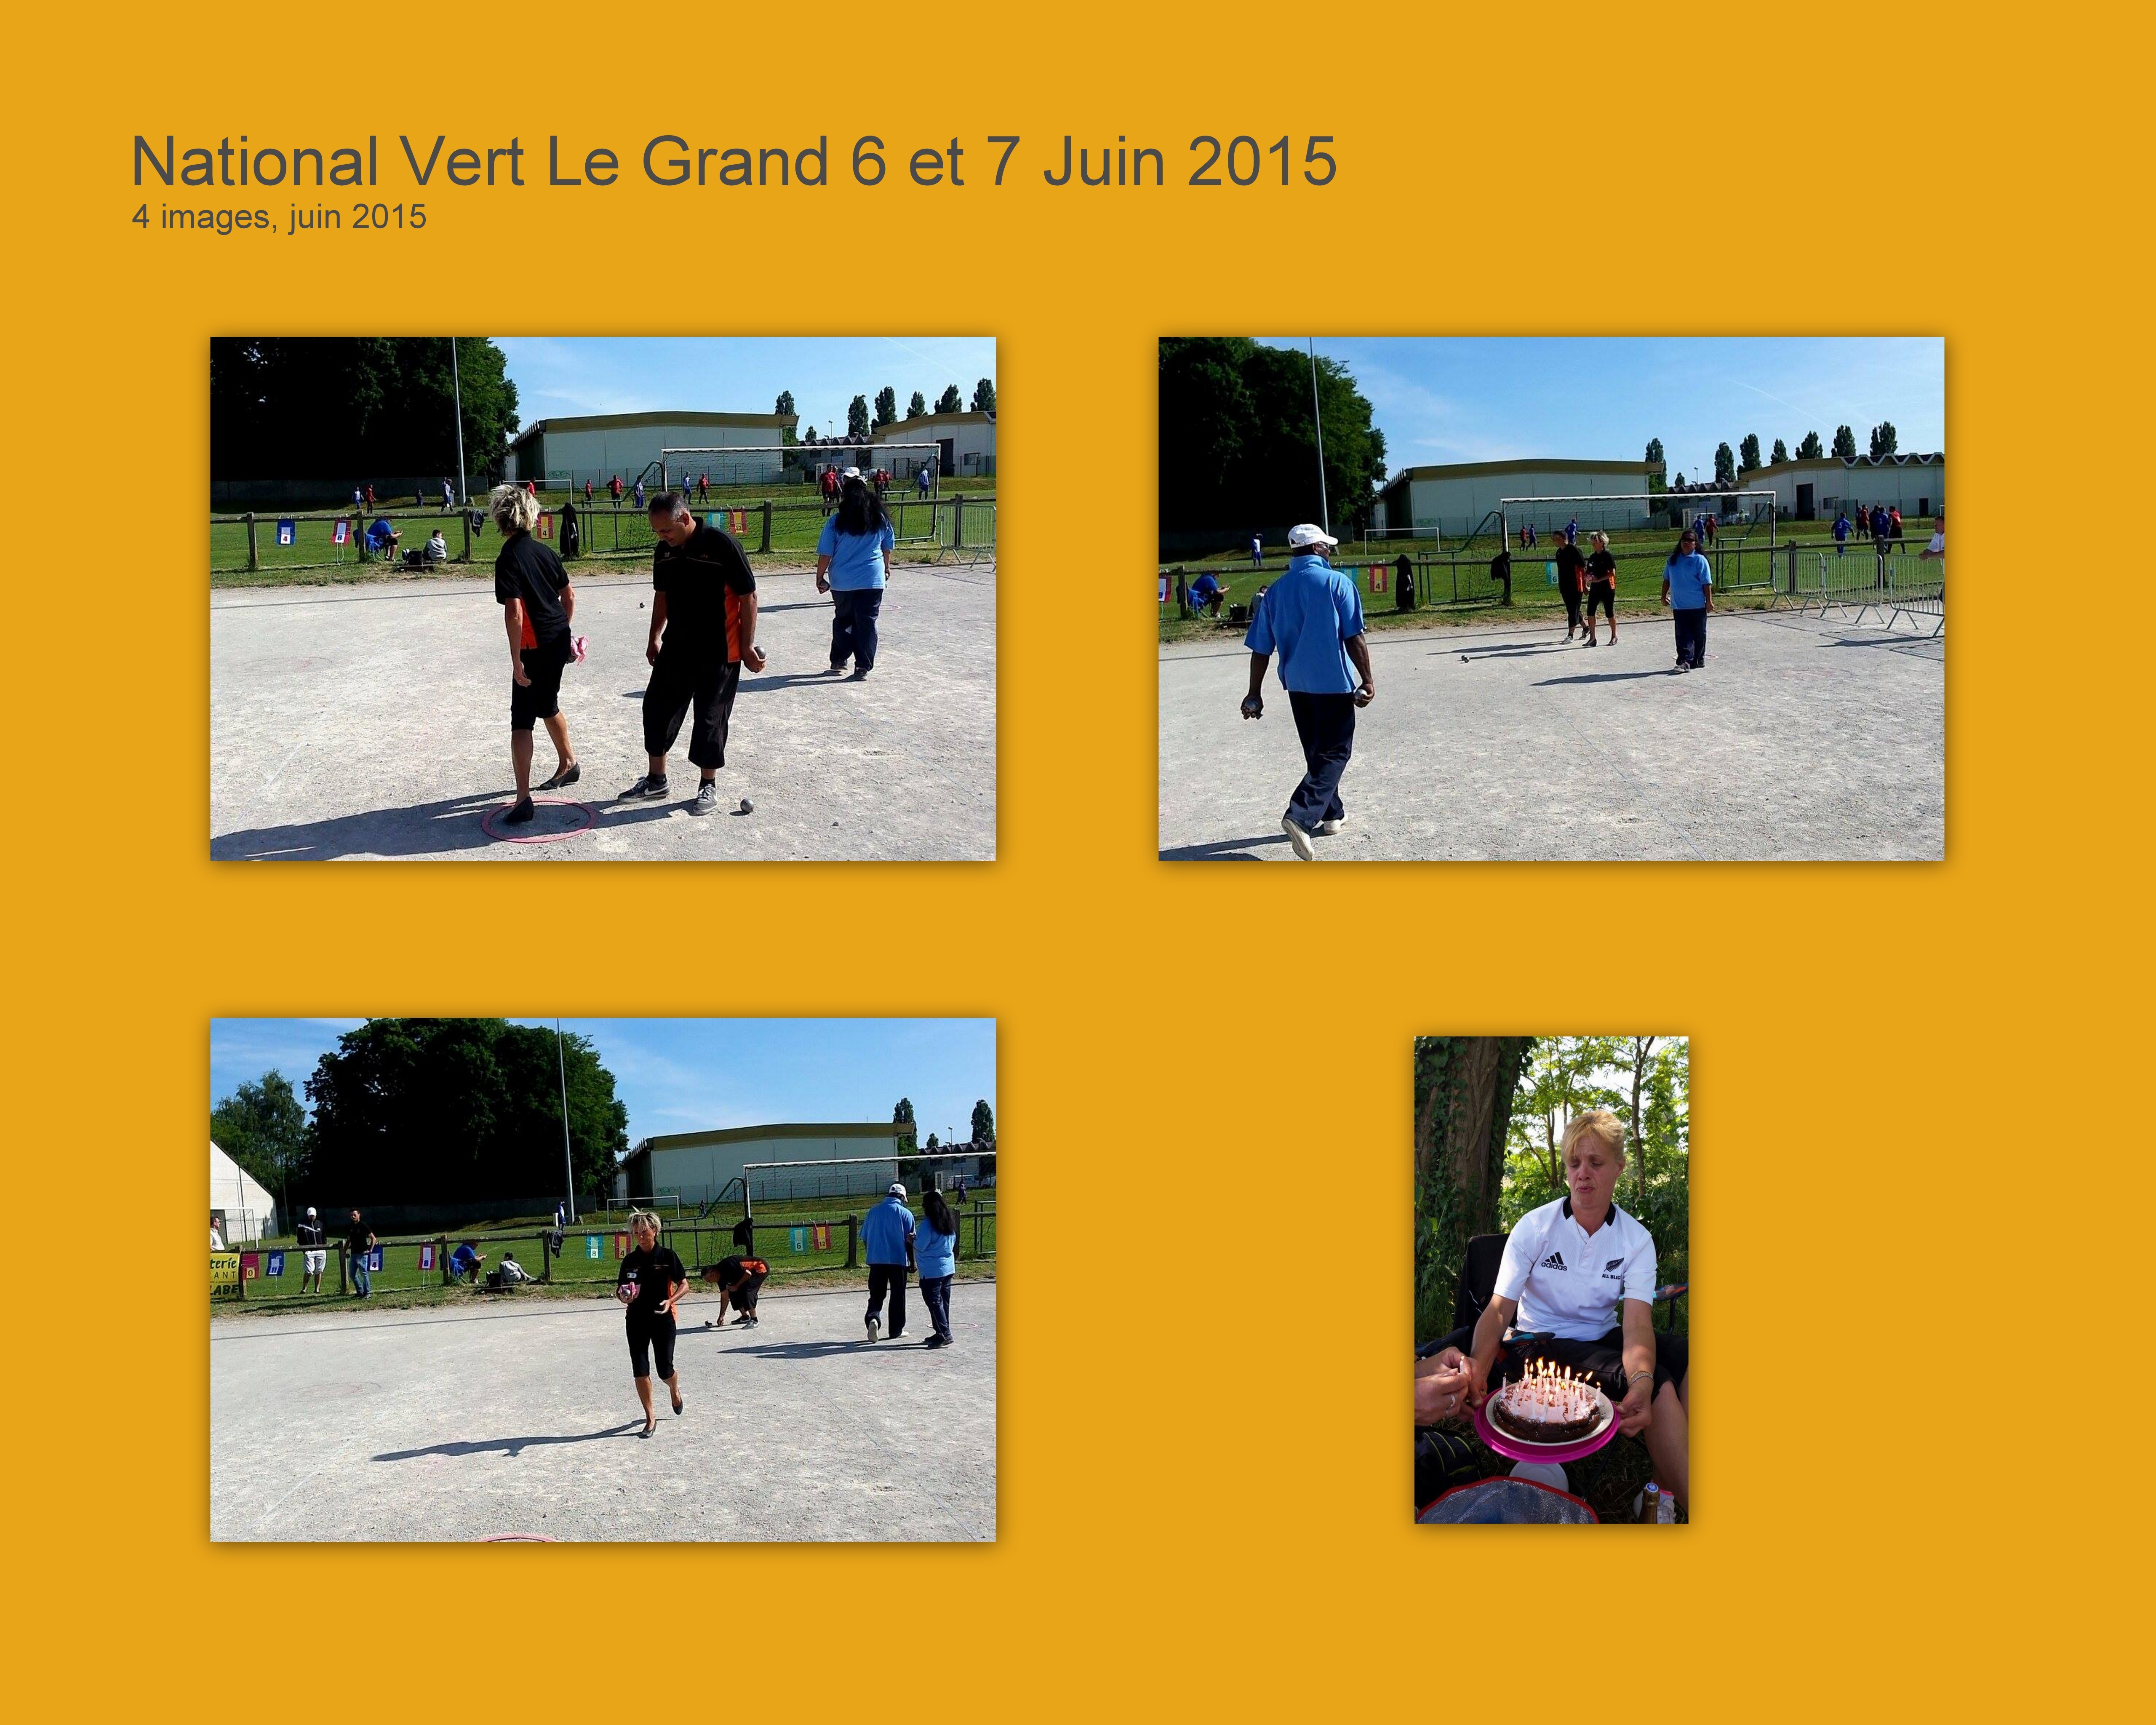 National Vert Le Grand Doublette Mixte 6 & 7 Juin 2015